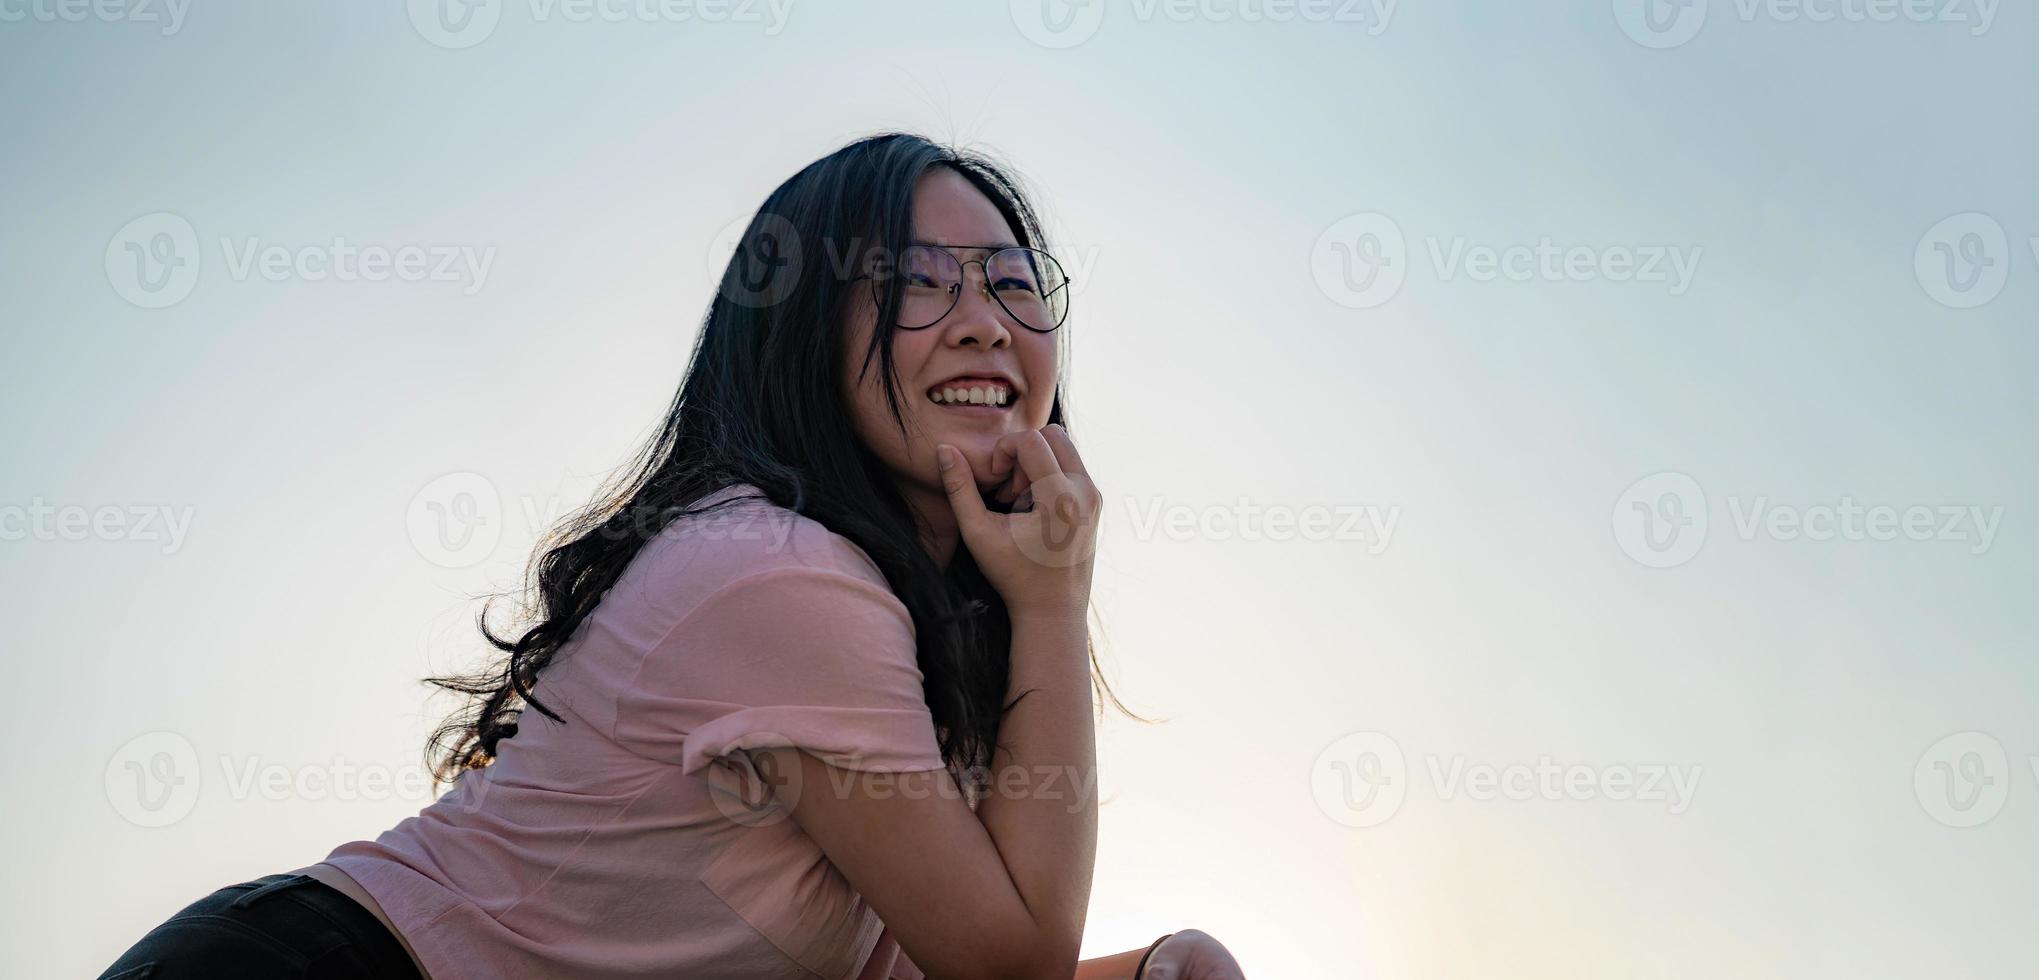 asiatico bicchieri carino donna posture per foto tiro su il tetto pavimento accanto cemento terrazza barracade a crepuscolo tempo nel silhouette angolo.